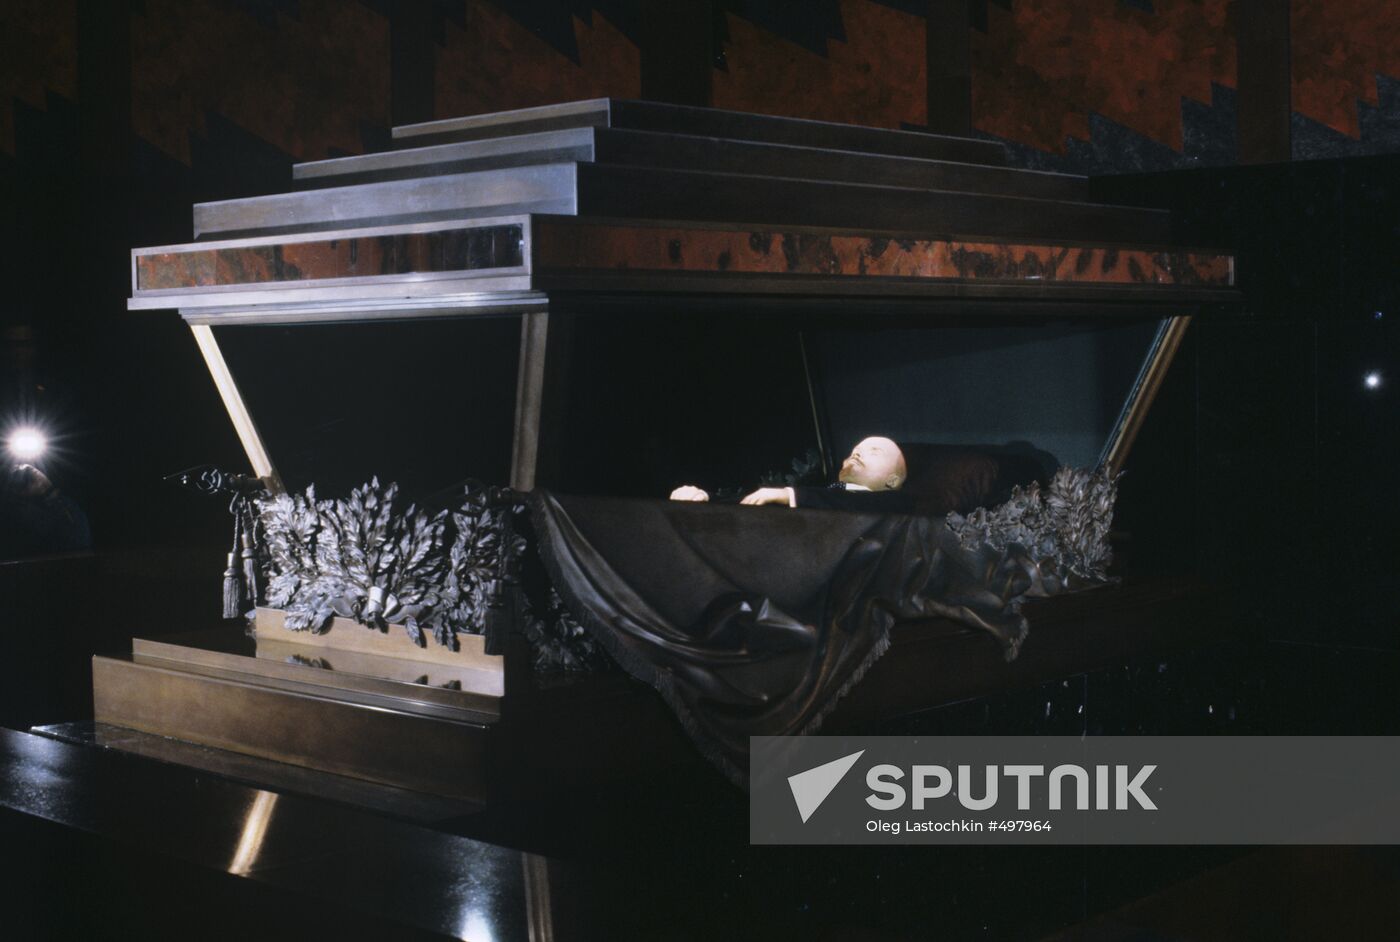 Crystal sarcophagus with Vladimir Lenin's body